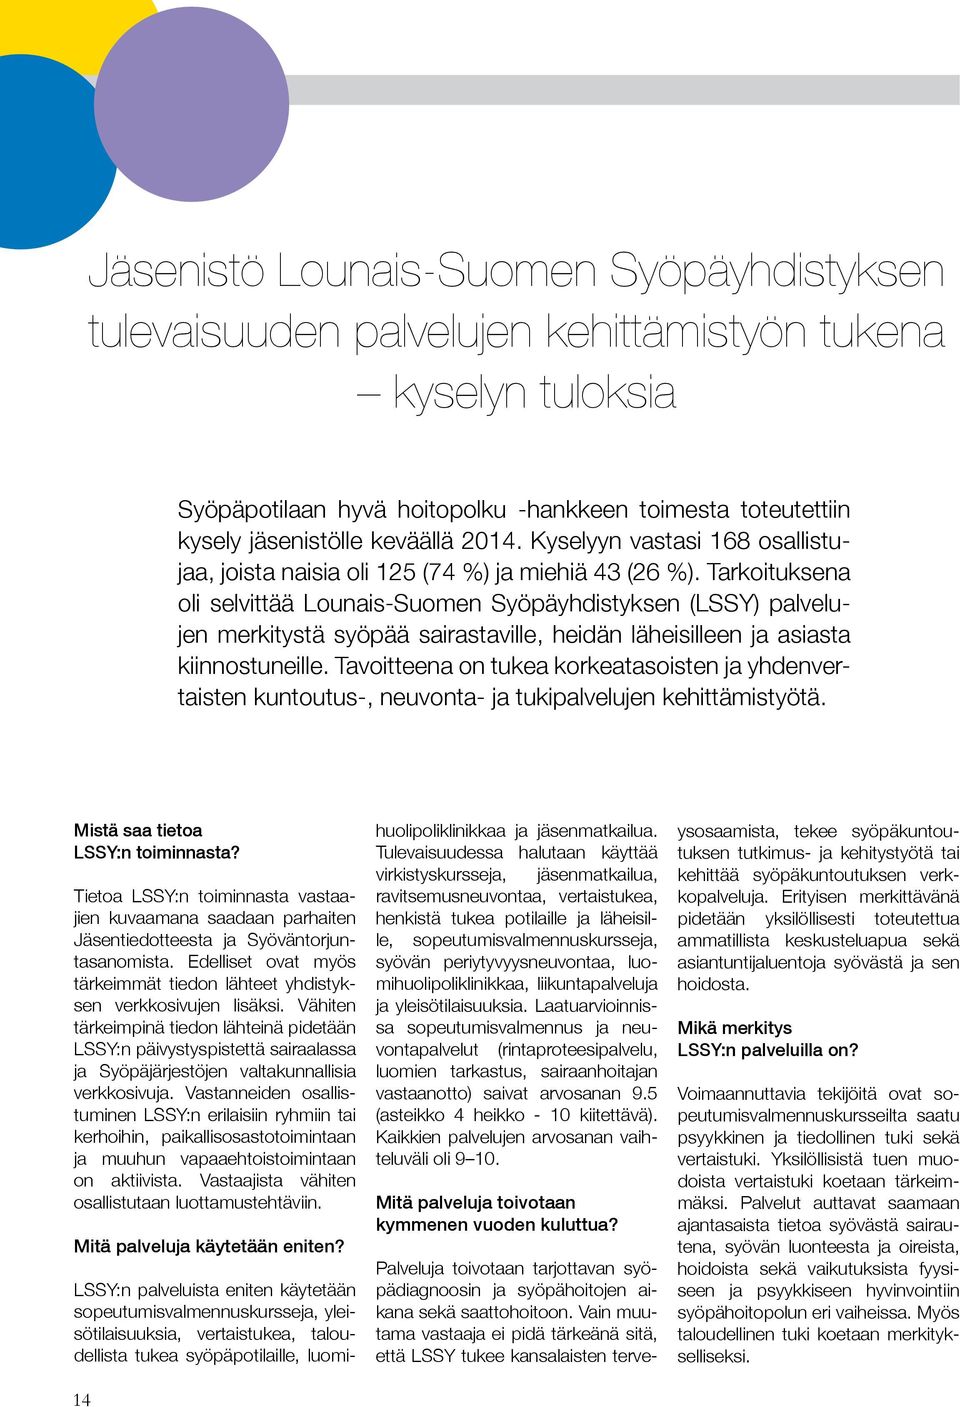 Tarkoituksena oli selvittää Lounais-Suomen Syöpäyhdistyksen (LSSY) palvelujen merkitystä syöpää sairastaville, heidän läheisilleen ja asiasta kiinnostuneille.